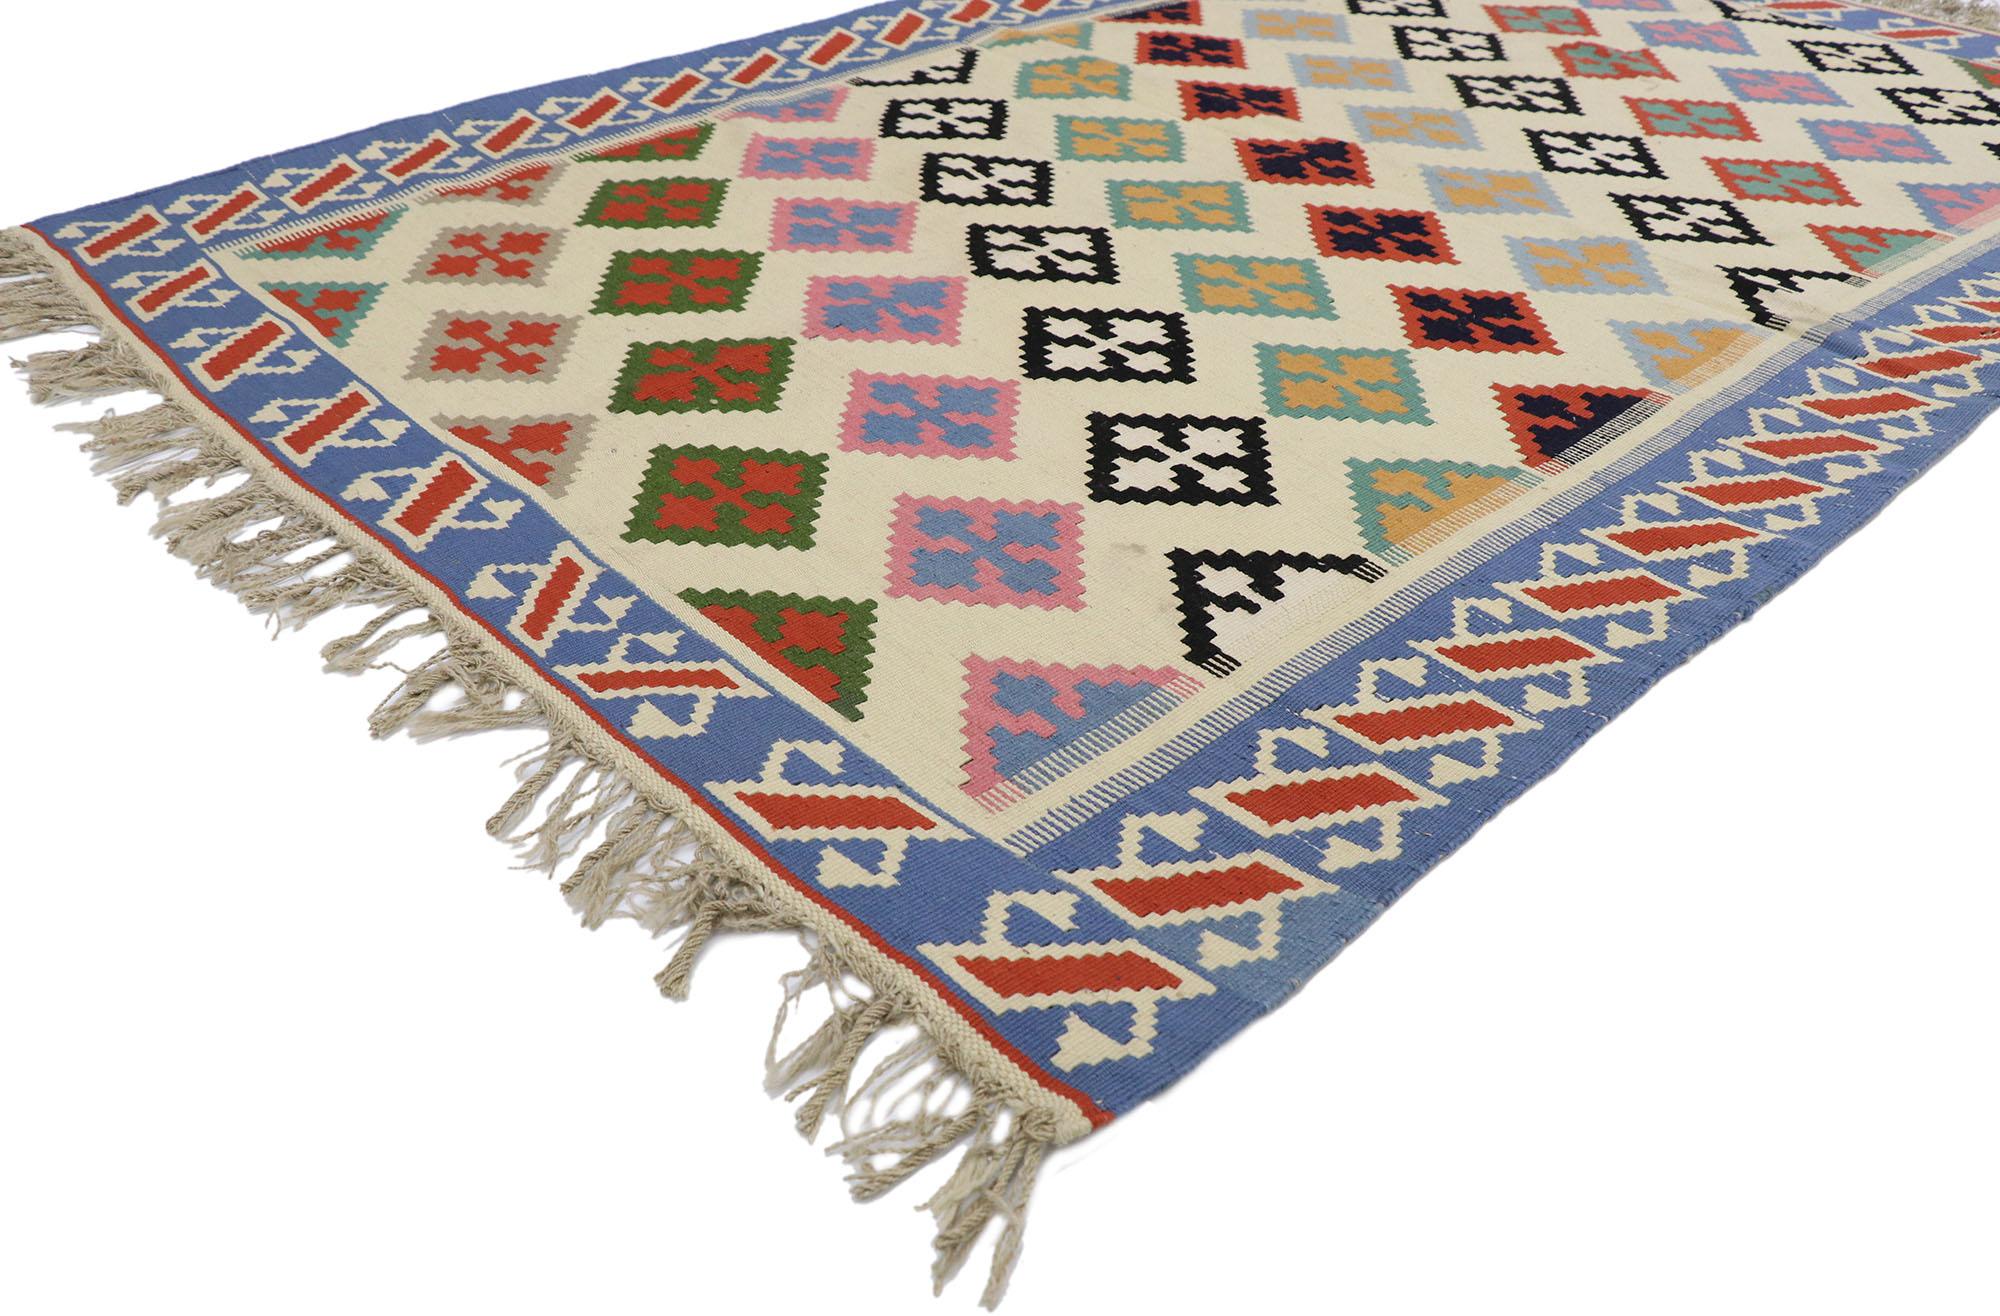 78028 Vintage Persisch Shiraz Kilim Teppich mit Tribal Stil 04'02 x 06'04. Voller winziger Details und einem kühnen, ausdrucksstarken Design, kombiniert mit leuchtenden Farben und einem Tribal-Stil, ist dieser handgewebte, alte persische